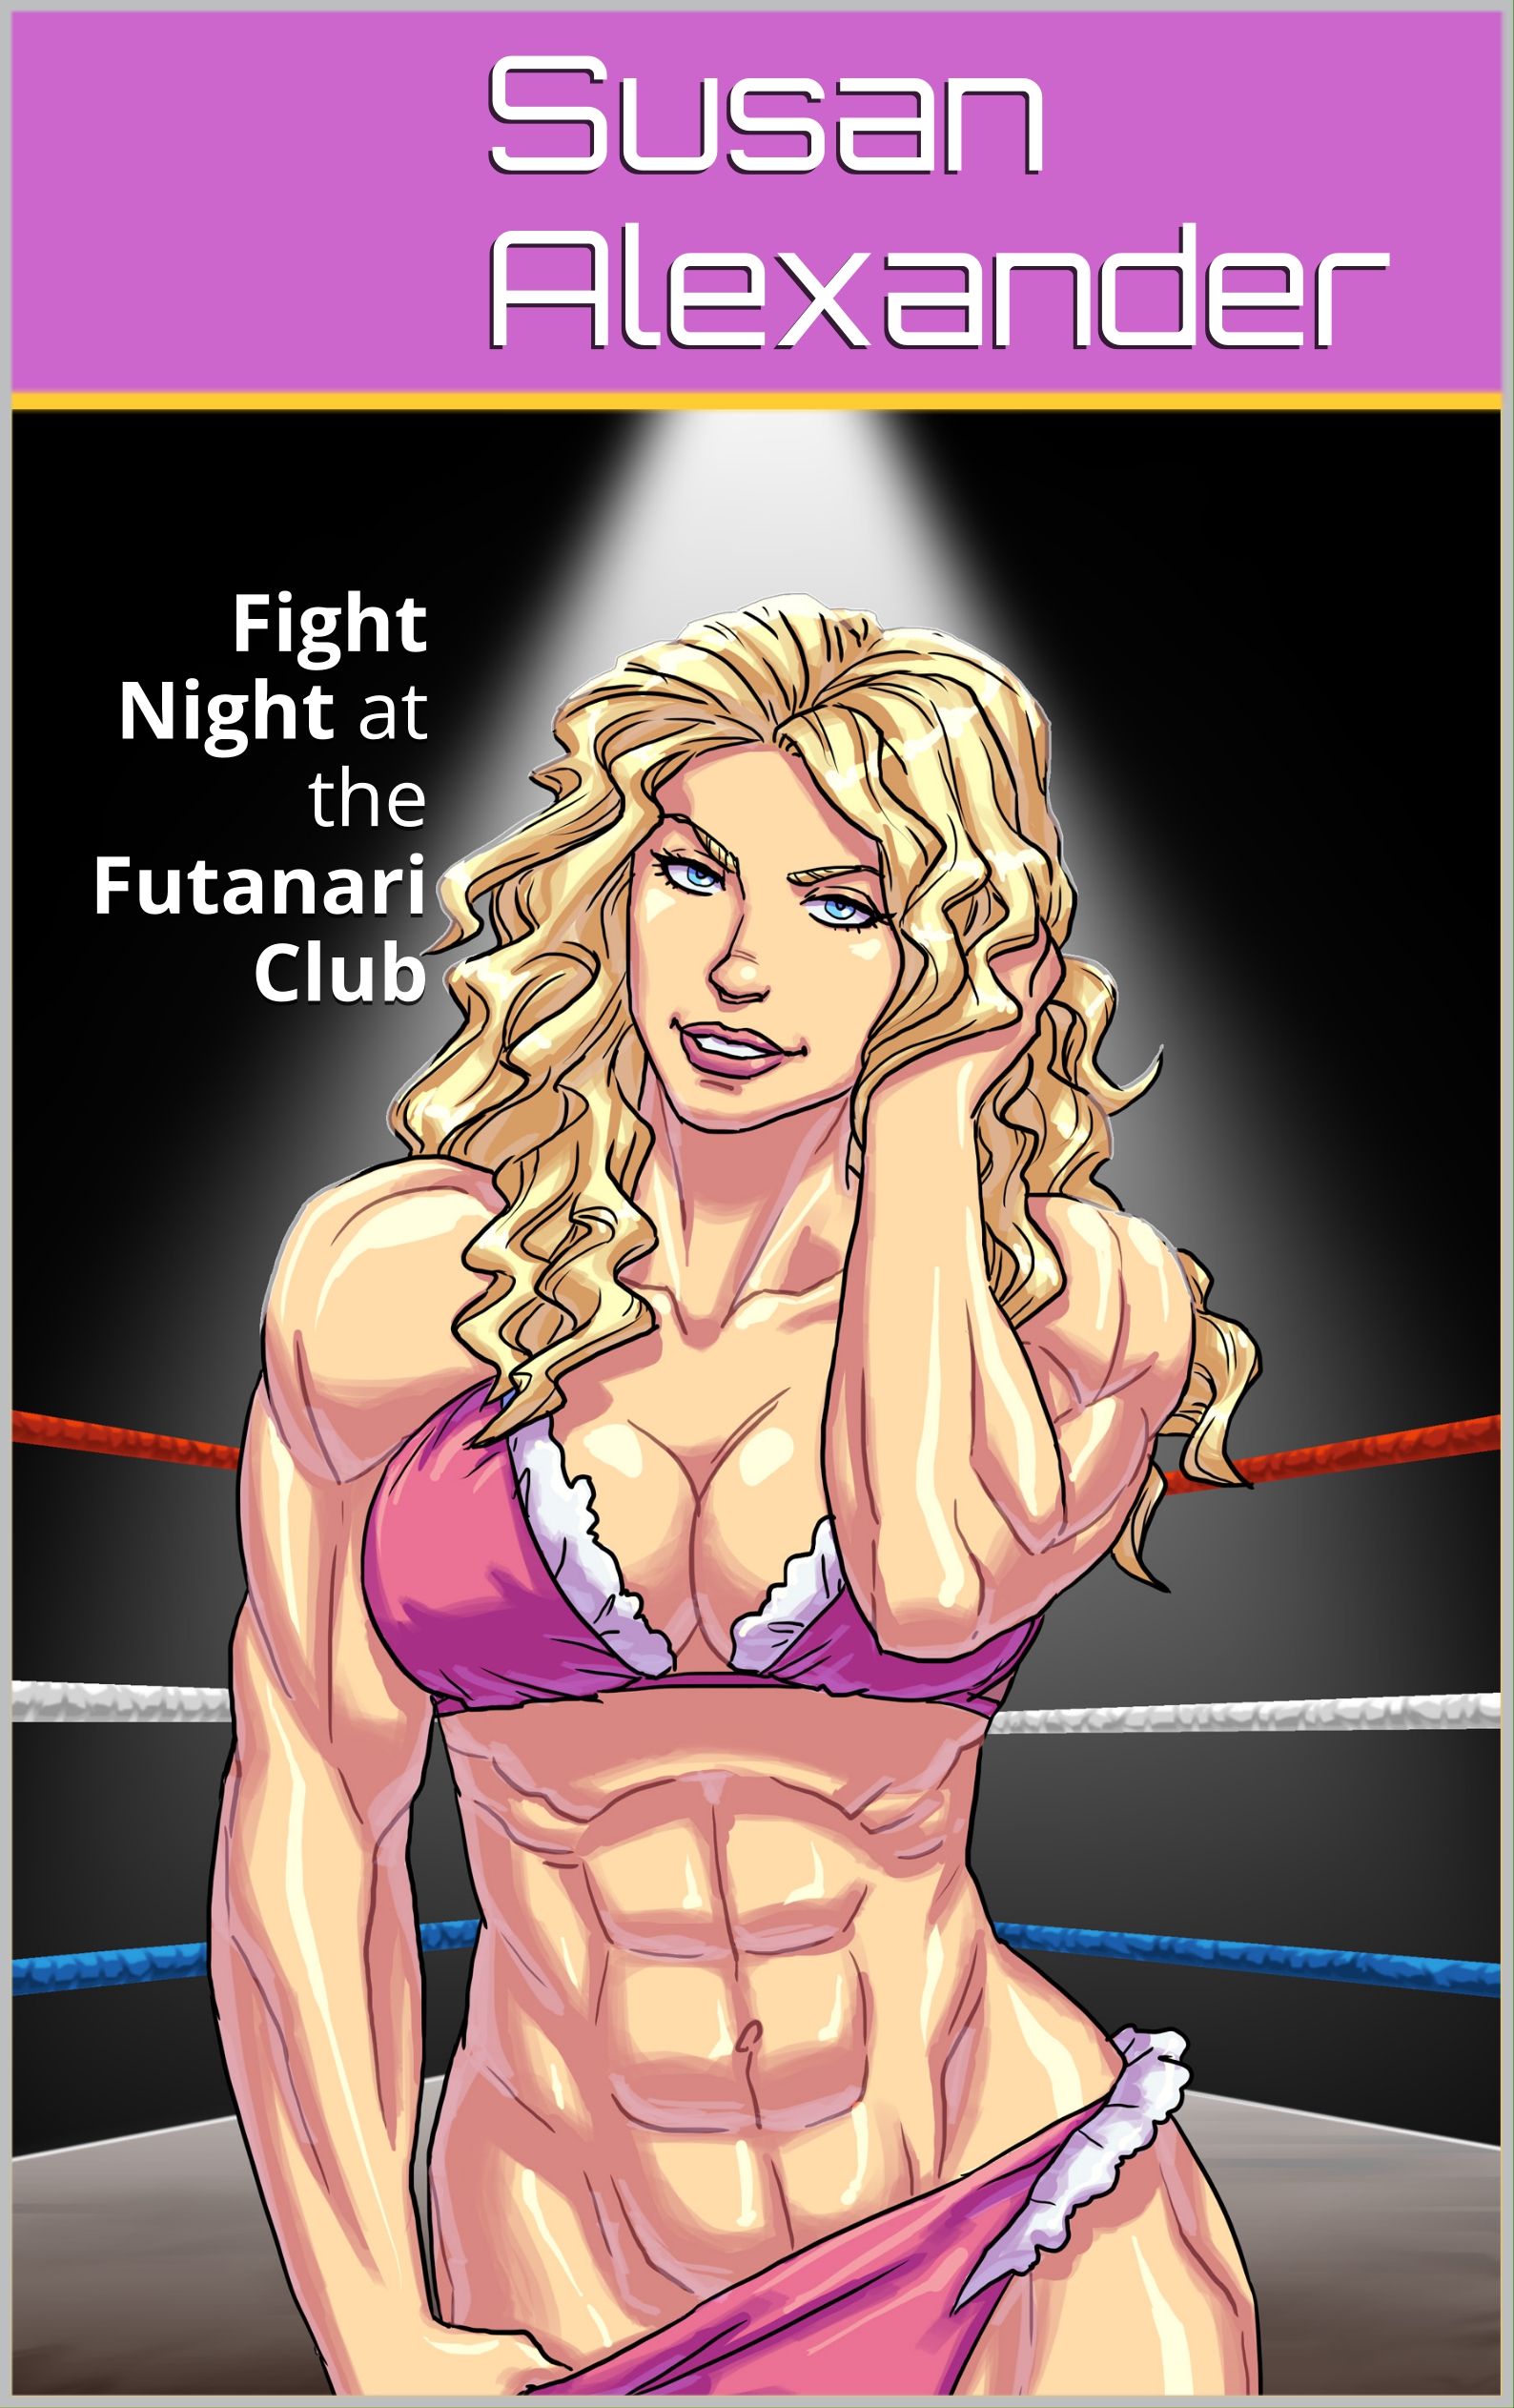 Futa Wrestling Porn - Smashwords â€“ Fight Night at the Futanari Club â€“ a book by Susan Alexander